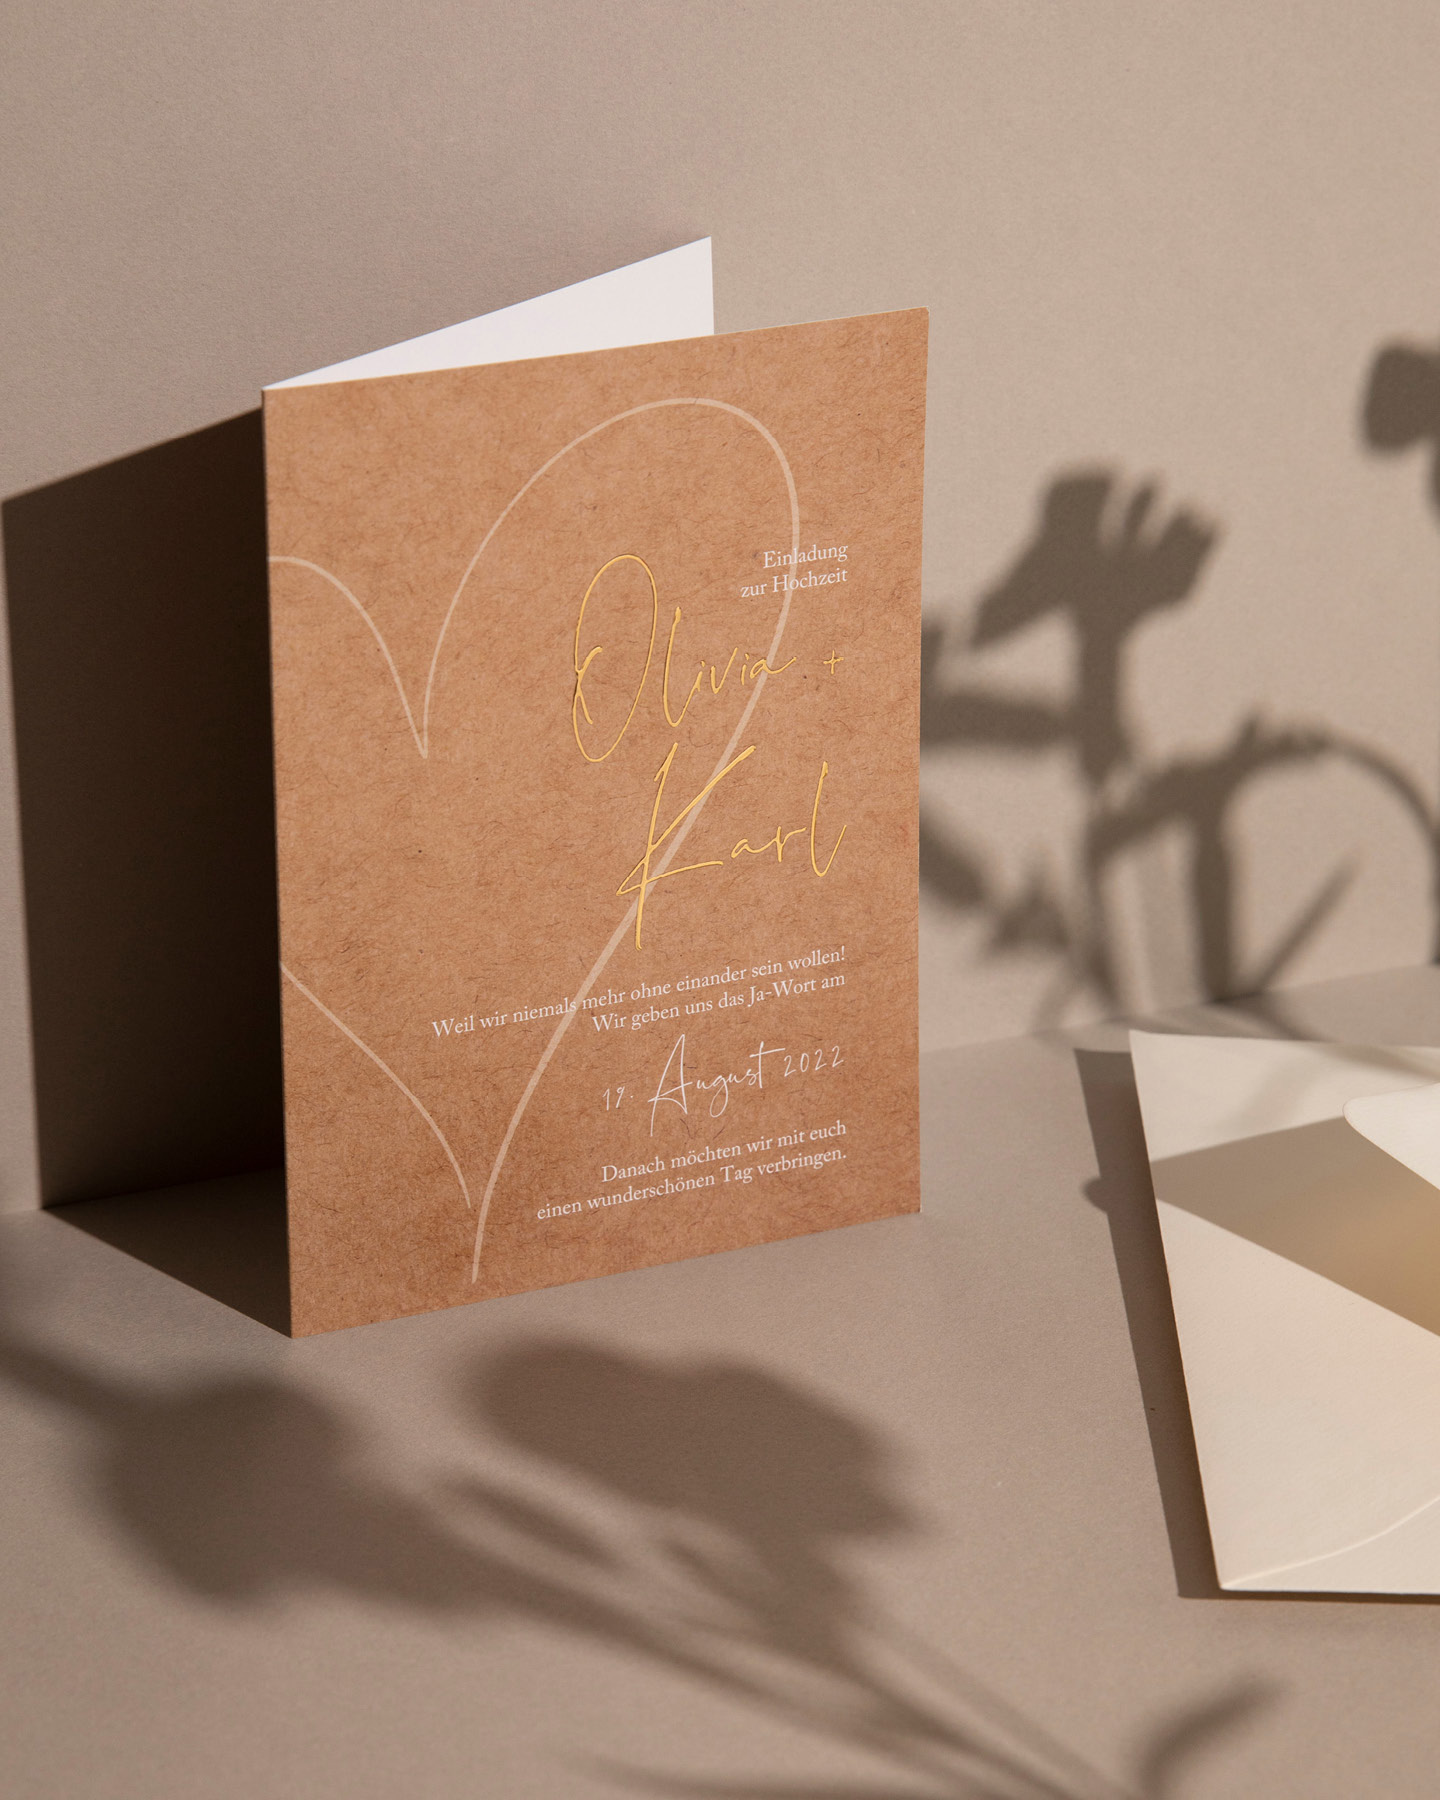 Hochzeitseinladung im Kraftpapier-Look mit weißer Typografie und den Namen des Hochzeitspaares in Gold.